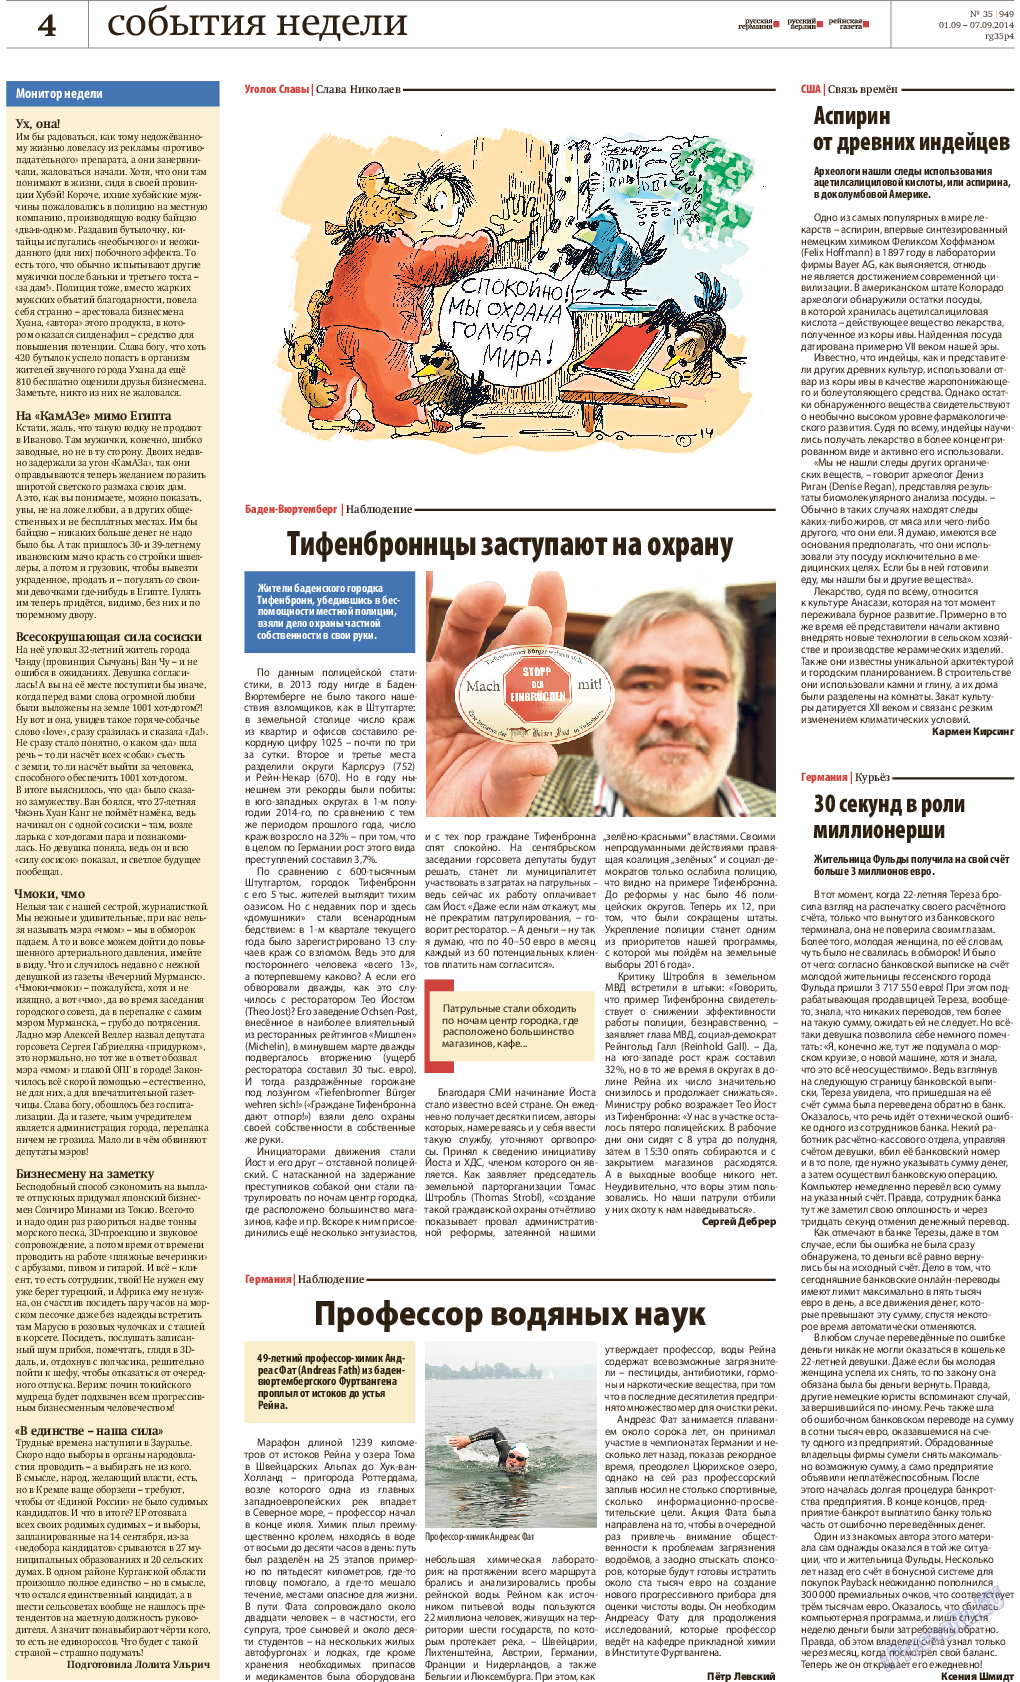 Рейнская газета, газета. 2014 №35 стр.4